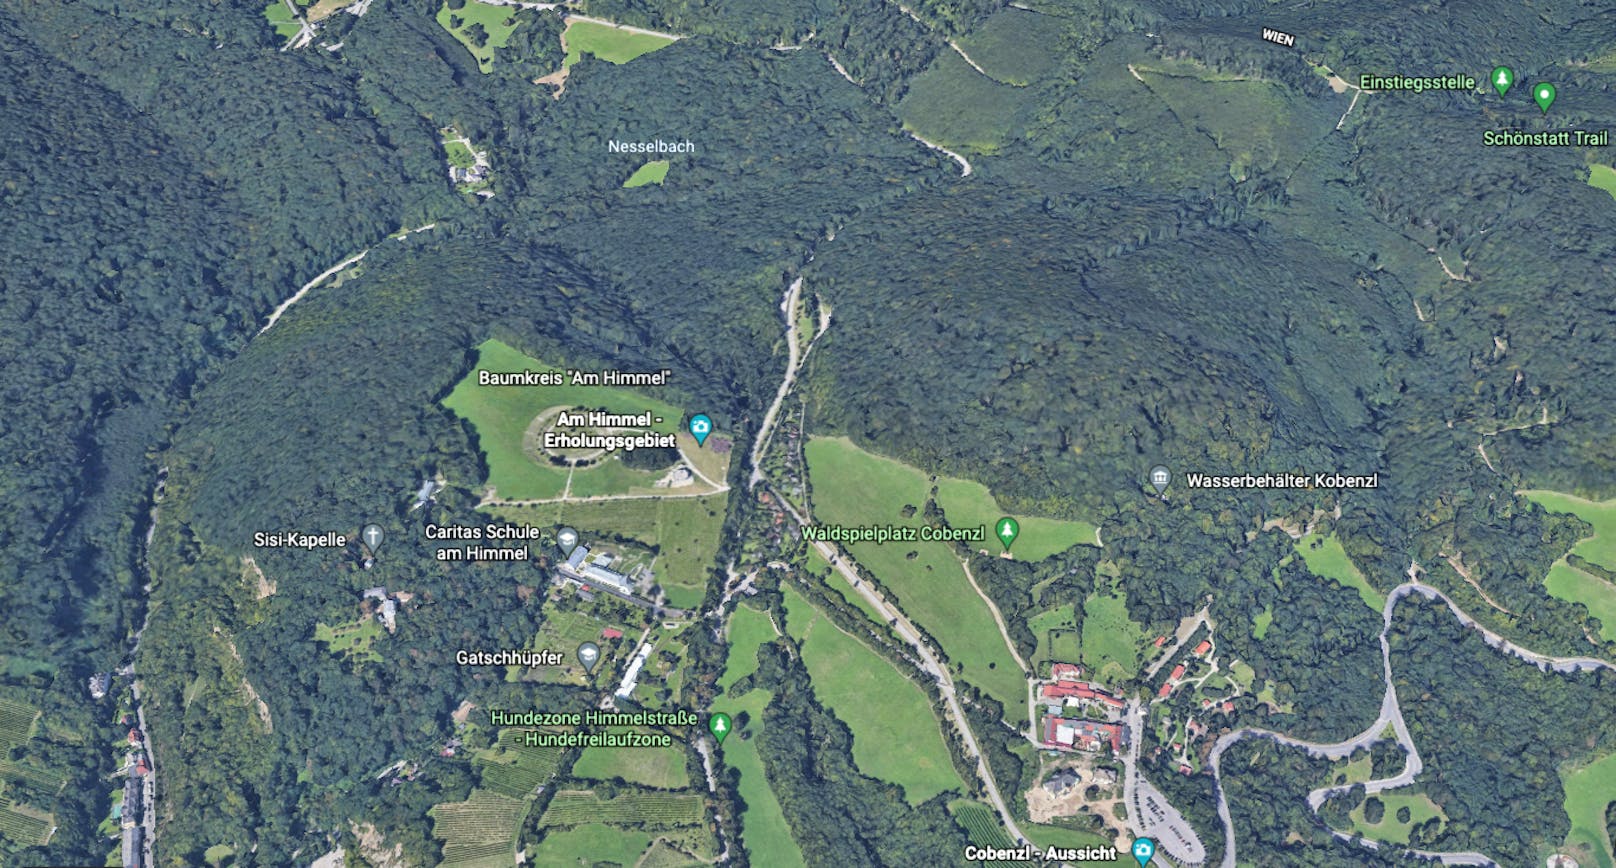 Nördlich des Cobenzl liegt der "Handleinsberg". In alten Karten ist er eingetragen, manche Döblinger kennen ihn noch. In der offiziellen Karte der Stadt fehlt er aber – noch.